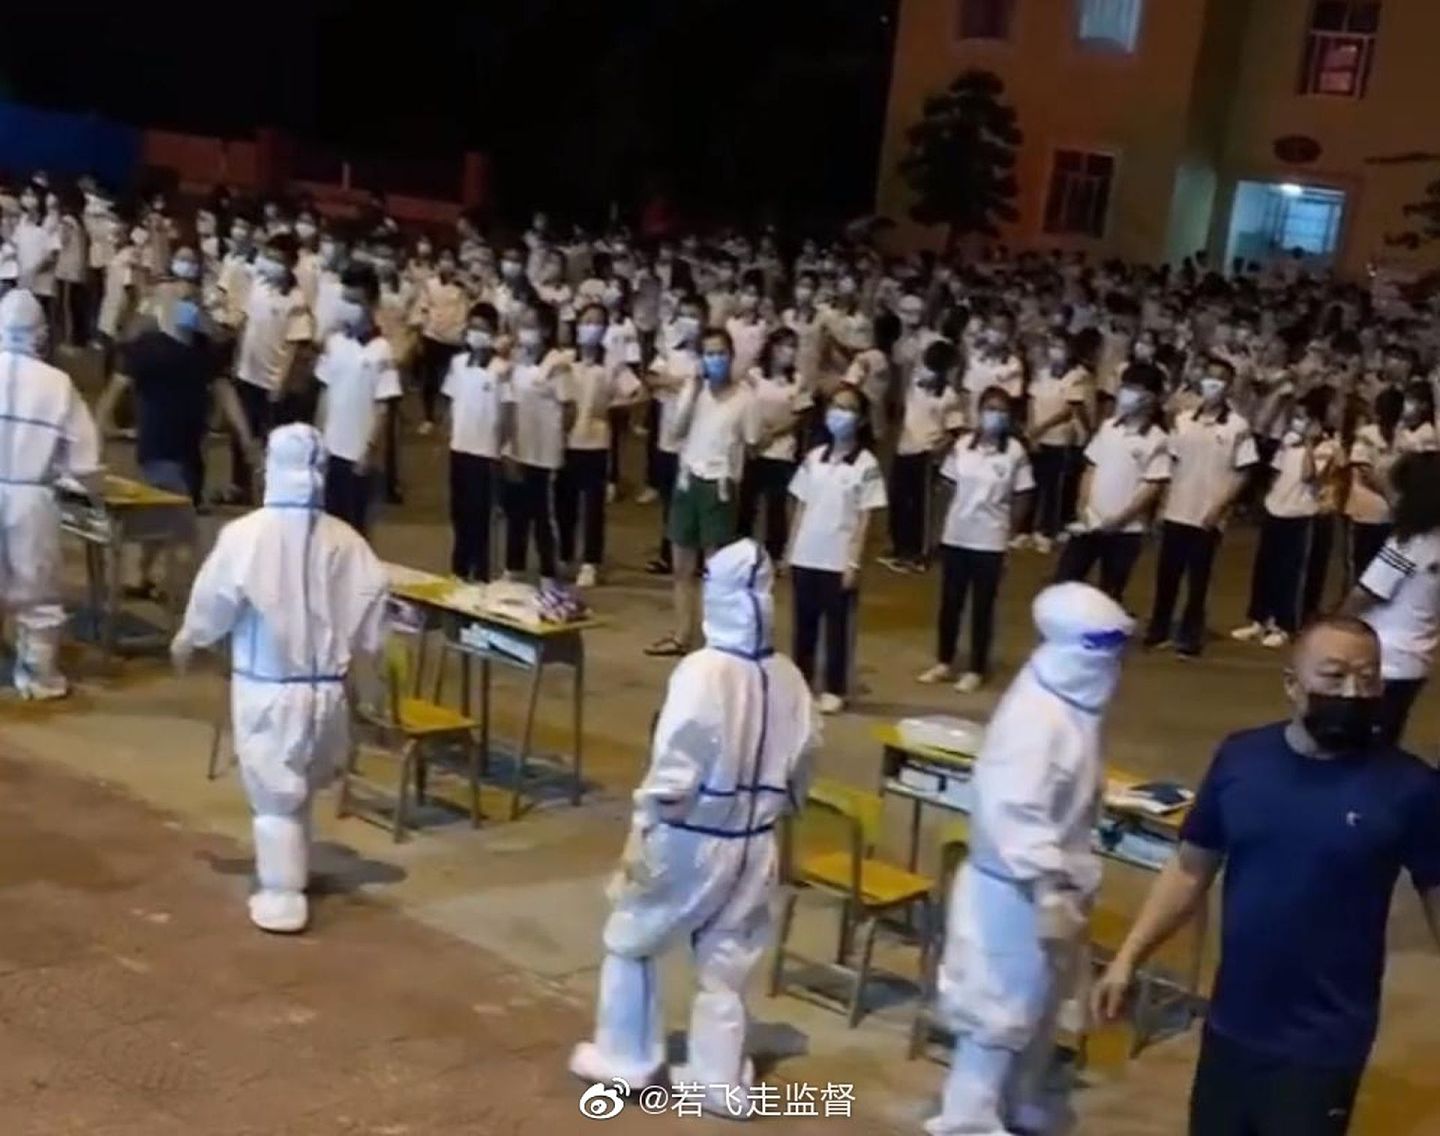 仙游县枫亭镇一间小学发现有学生及家长新冠病毒核酸检测阳性，已经即时停课并安排所有人居家隔离。（微博@若飞走监督）